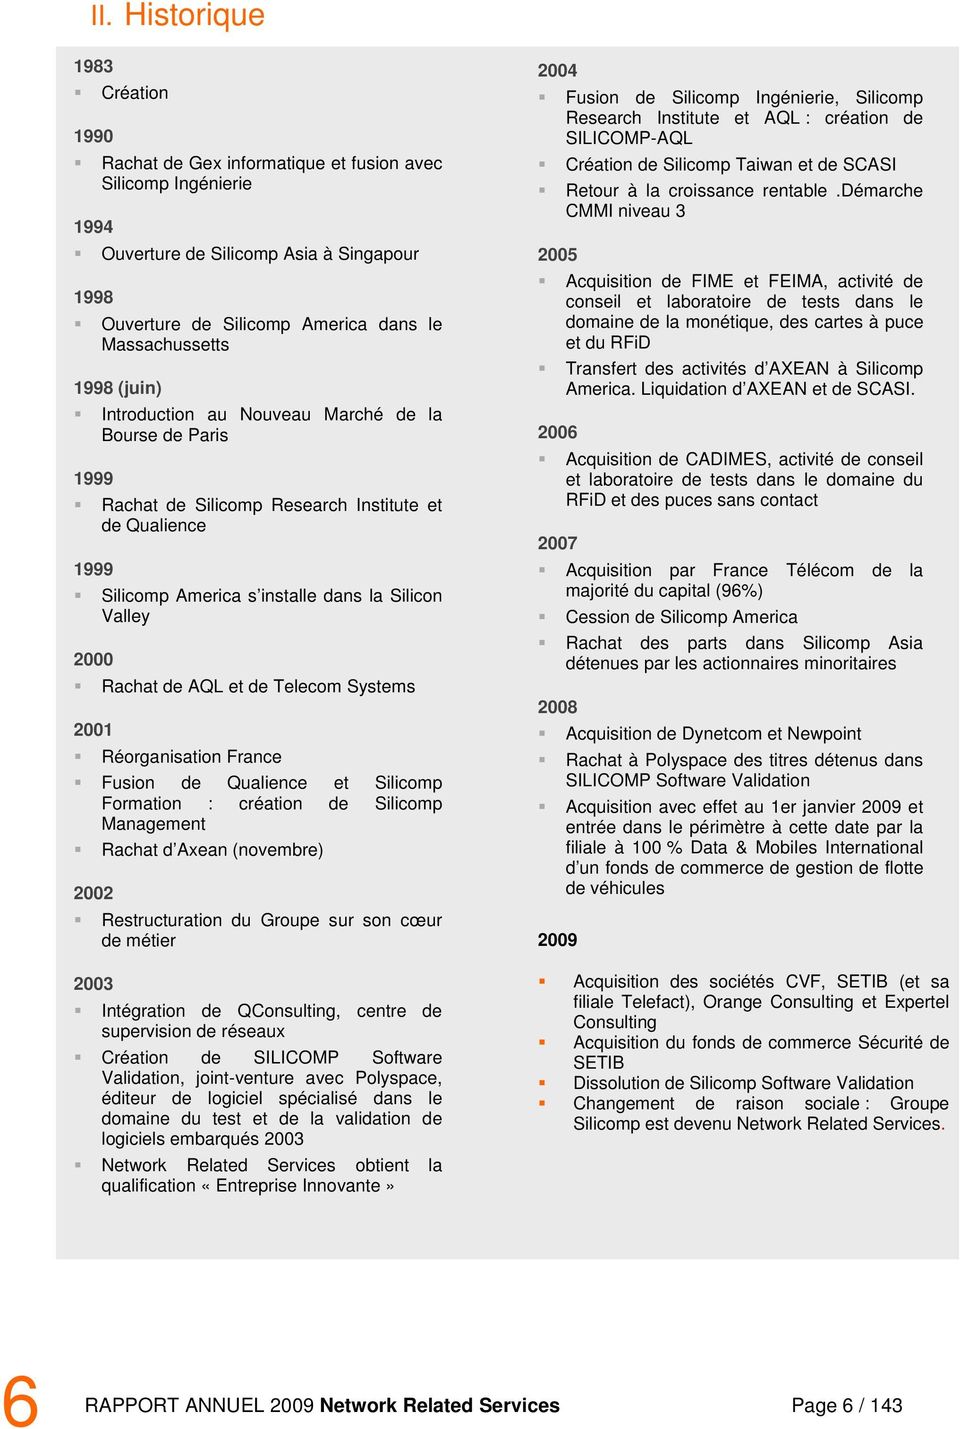 AQL et de Telecom Systems Réorganisation France Fusion de Qualience et Silicomp Formation : création de Silicomp Management 2002 2003 Rachat d Axean (novembre) Restructuration du Groupe sur son cœur